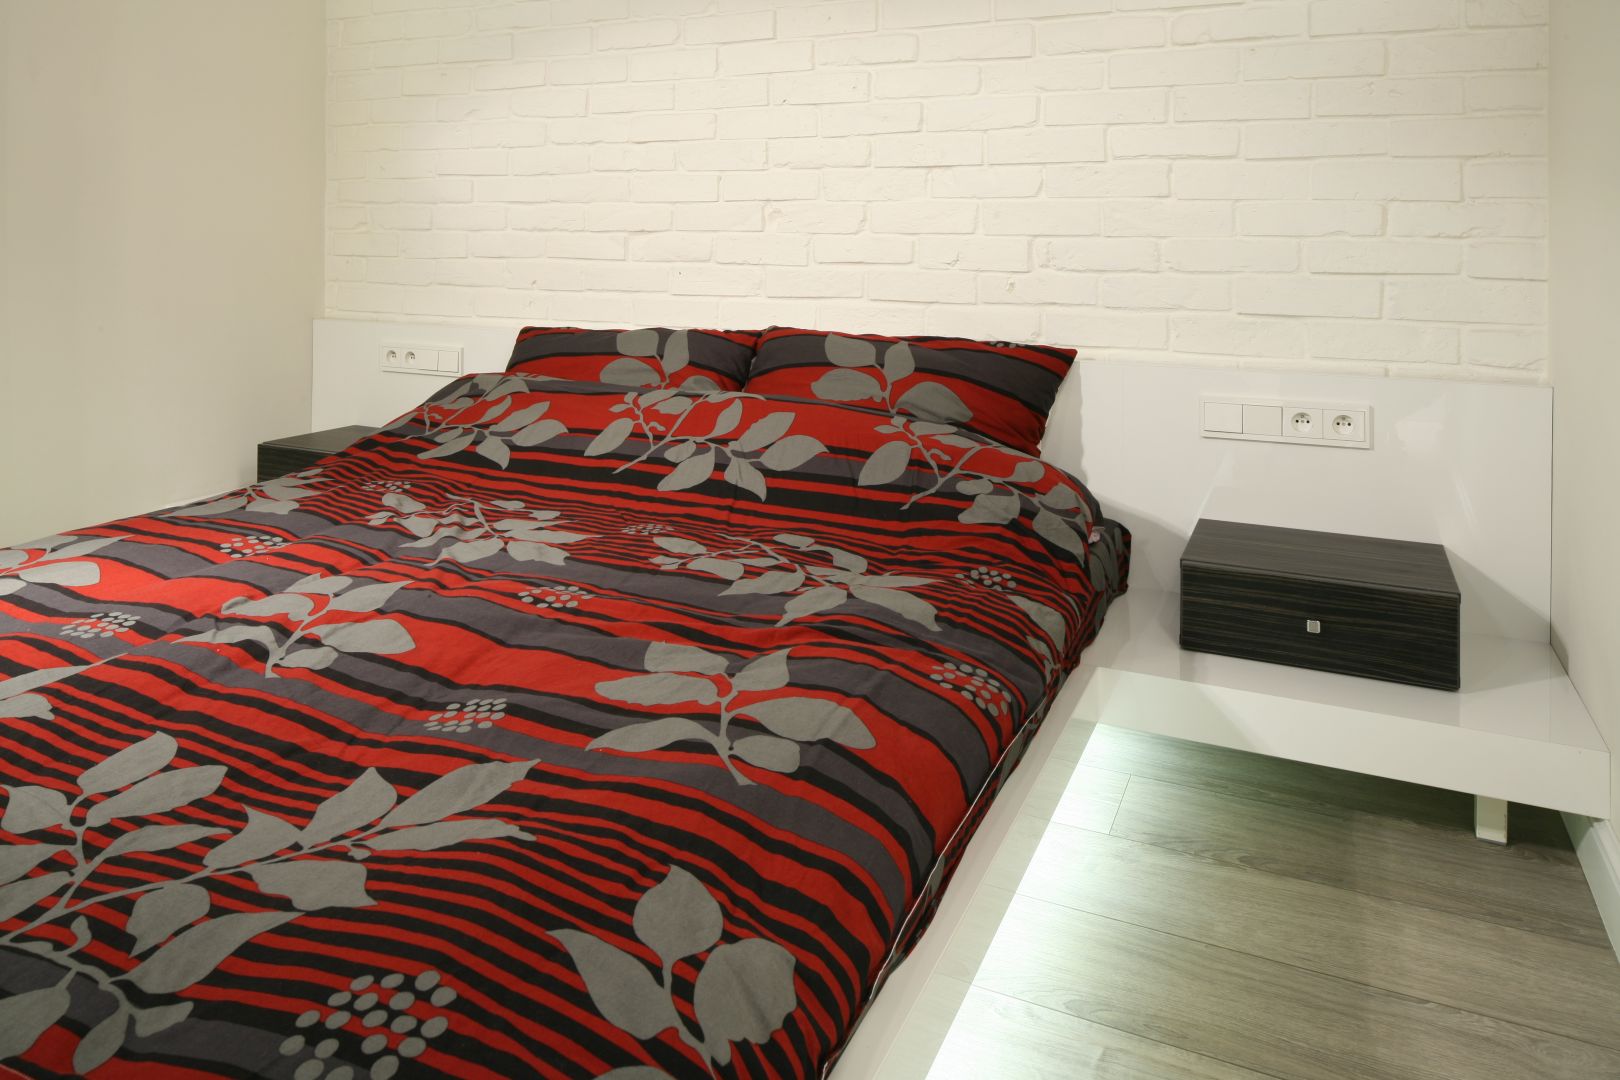 Sypialnia w minimalistycznym stylu. Podświetlone łóżko wygląda jakby unosiło się nad podłogą. Projekt: Dominik Respondek. Fot. Bartosz Jarosz 